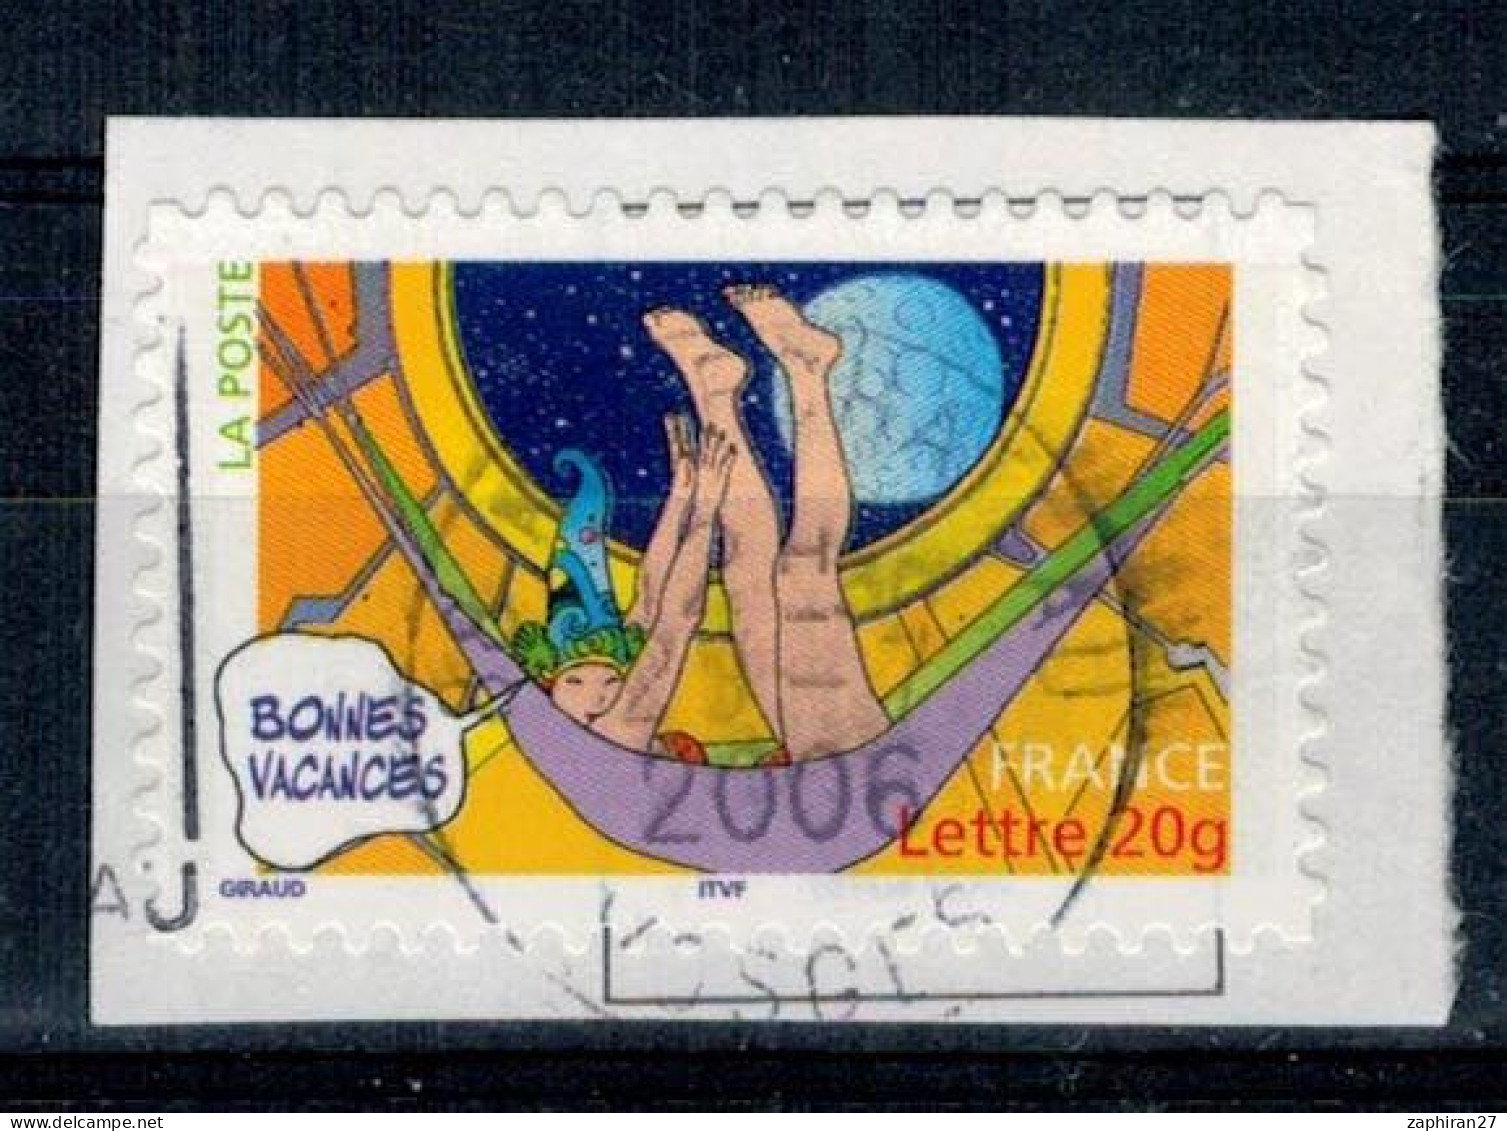 2006 N 84 BONNES VACANCES HAMAC OBLITERE CACHET ROND 23-7-2006 #234# - Used Stamps